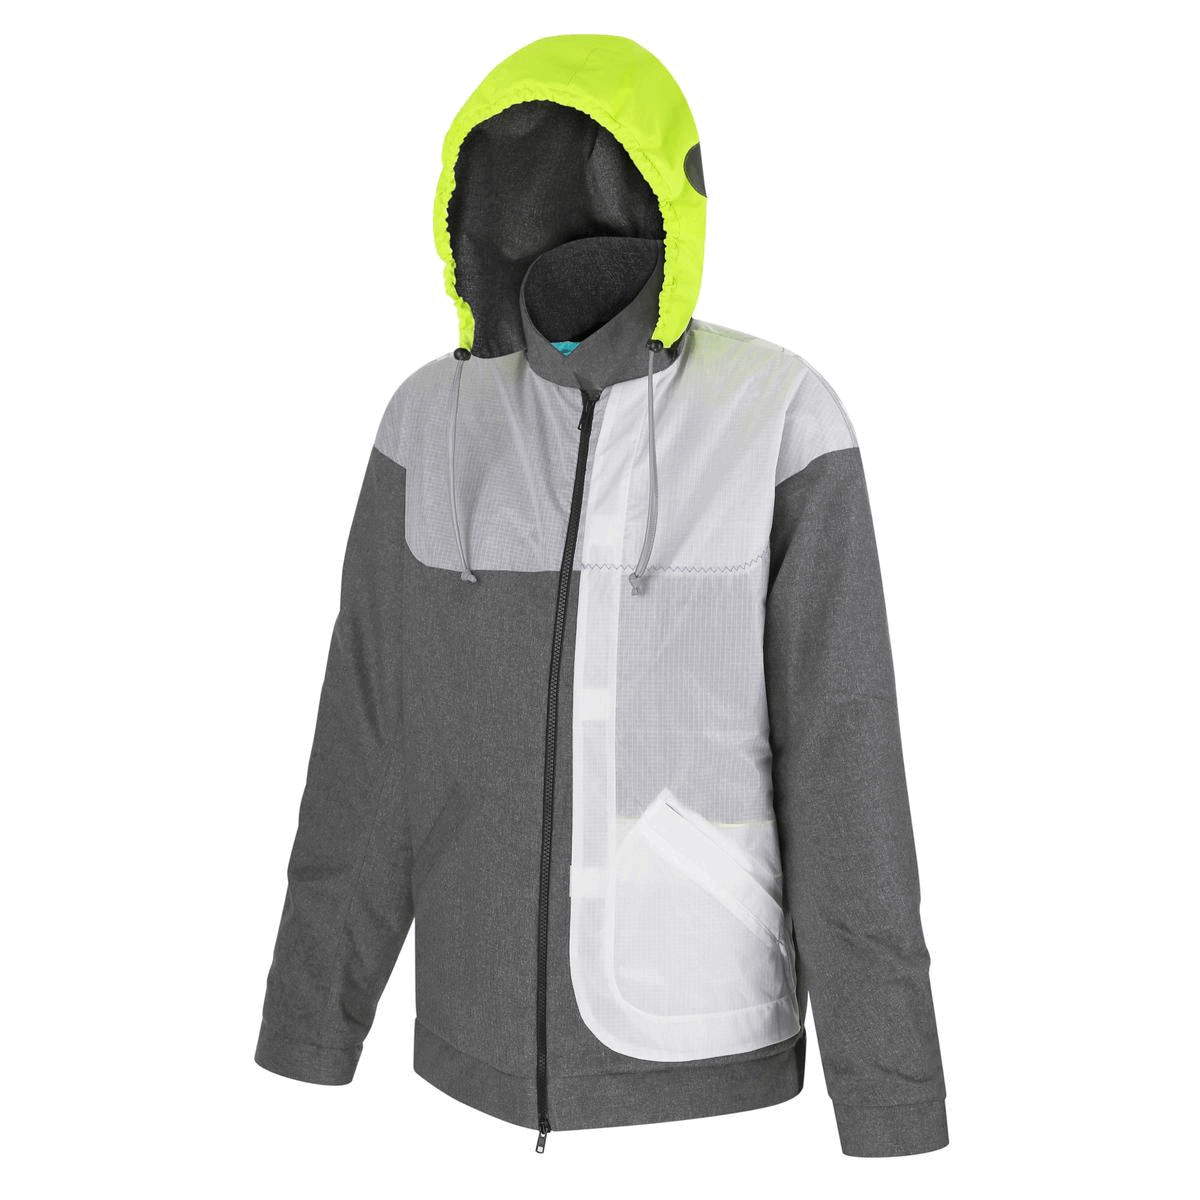 Designer waterproof rain jacket from REwind manufacturer brand, Ukraine